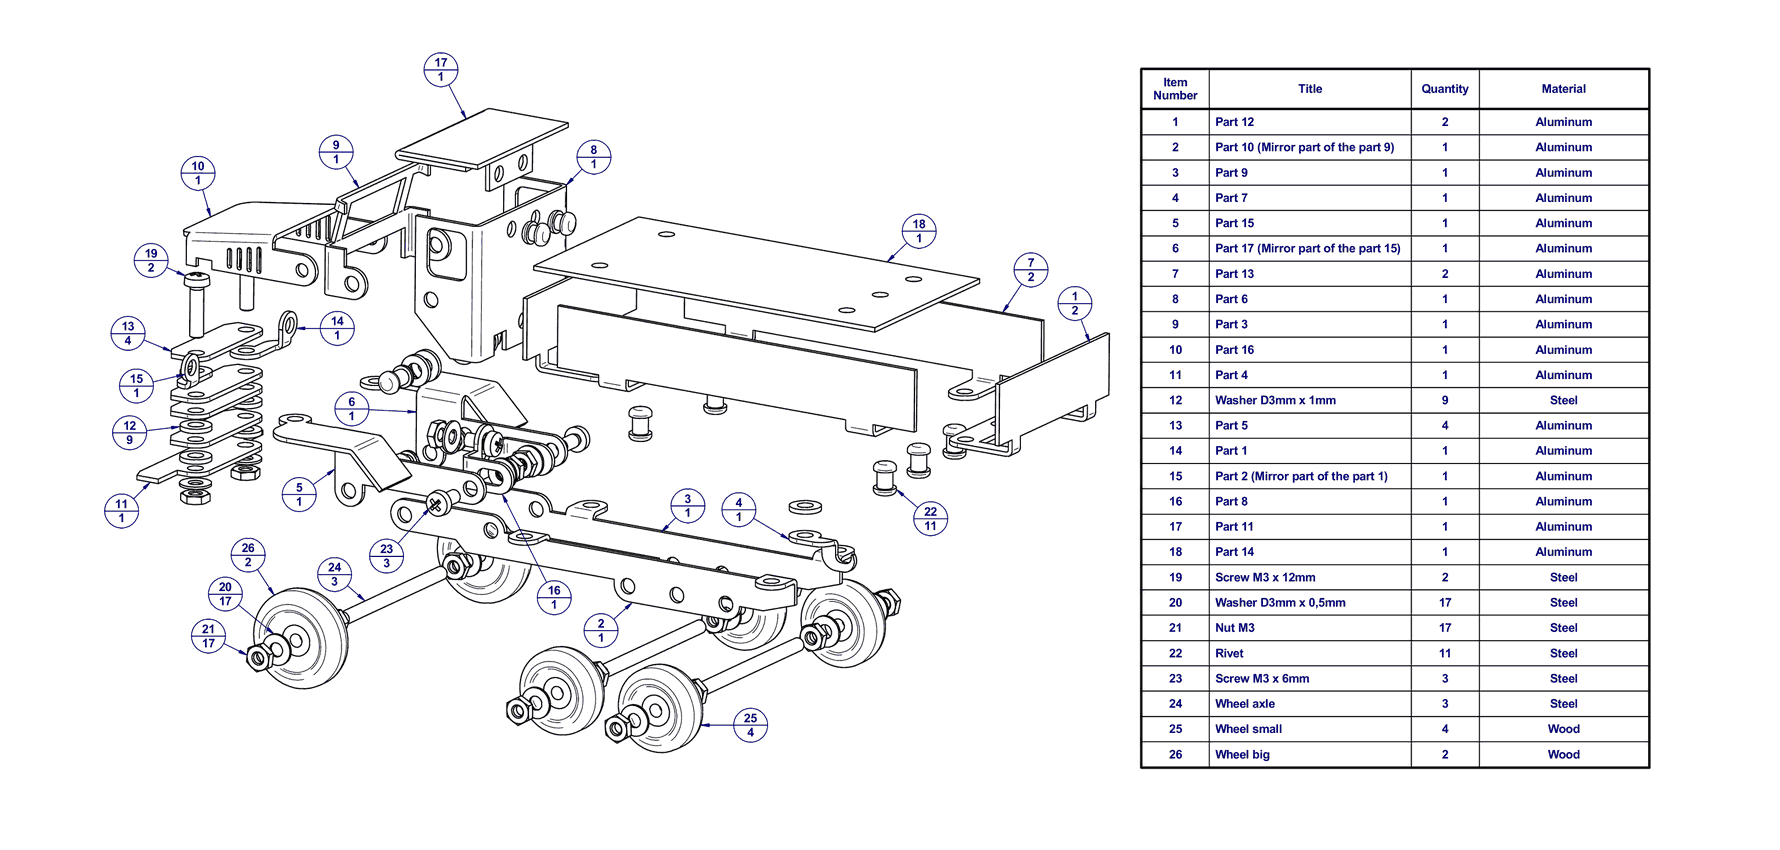 Parts Of A Dump Truck Diagram